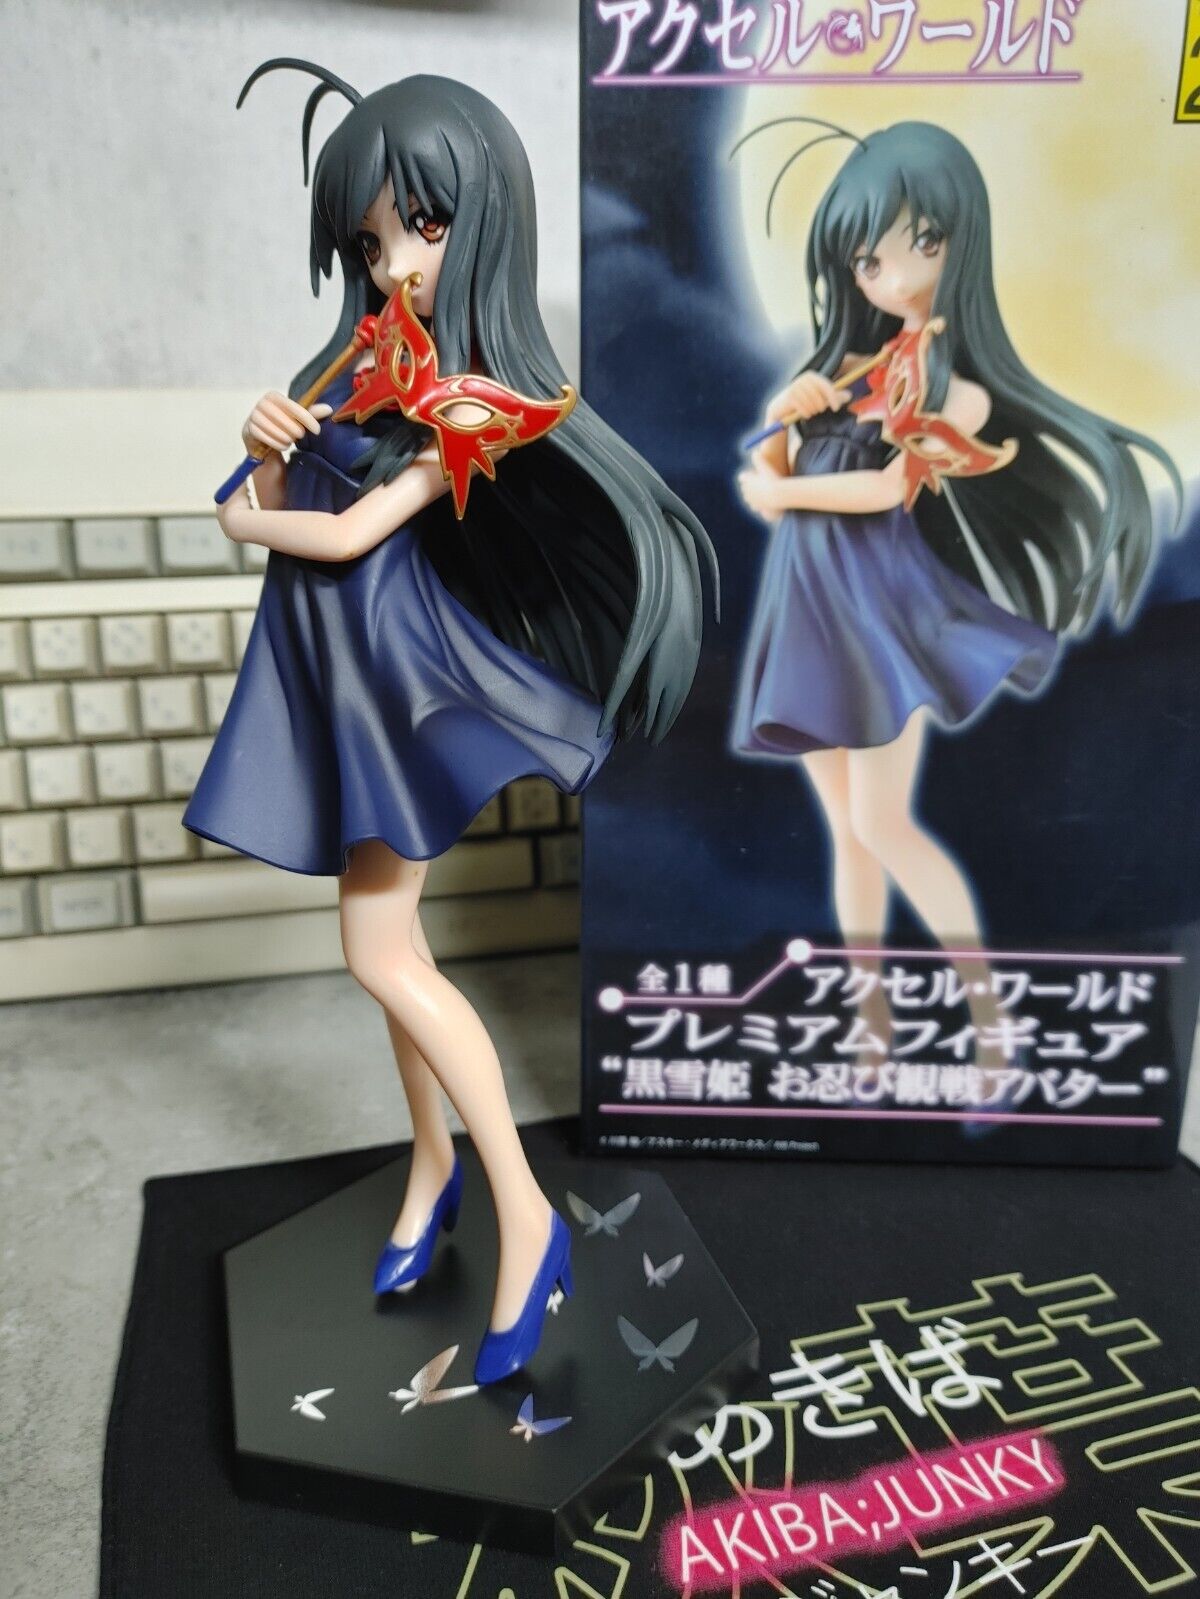 Anime Figure Accel World Kuroyukihime Premium Dengeki Bunko 20th Anniversary JP